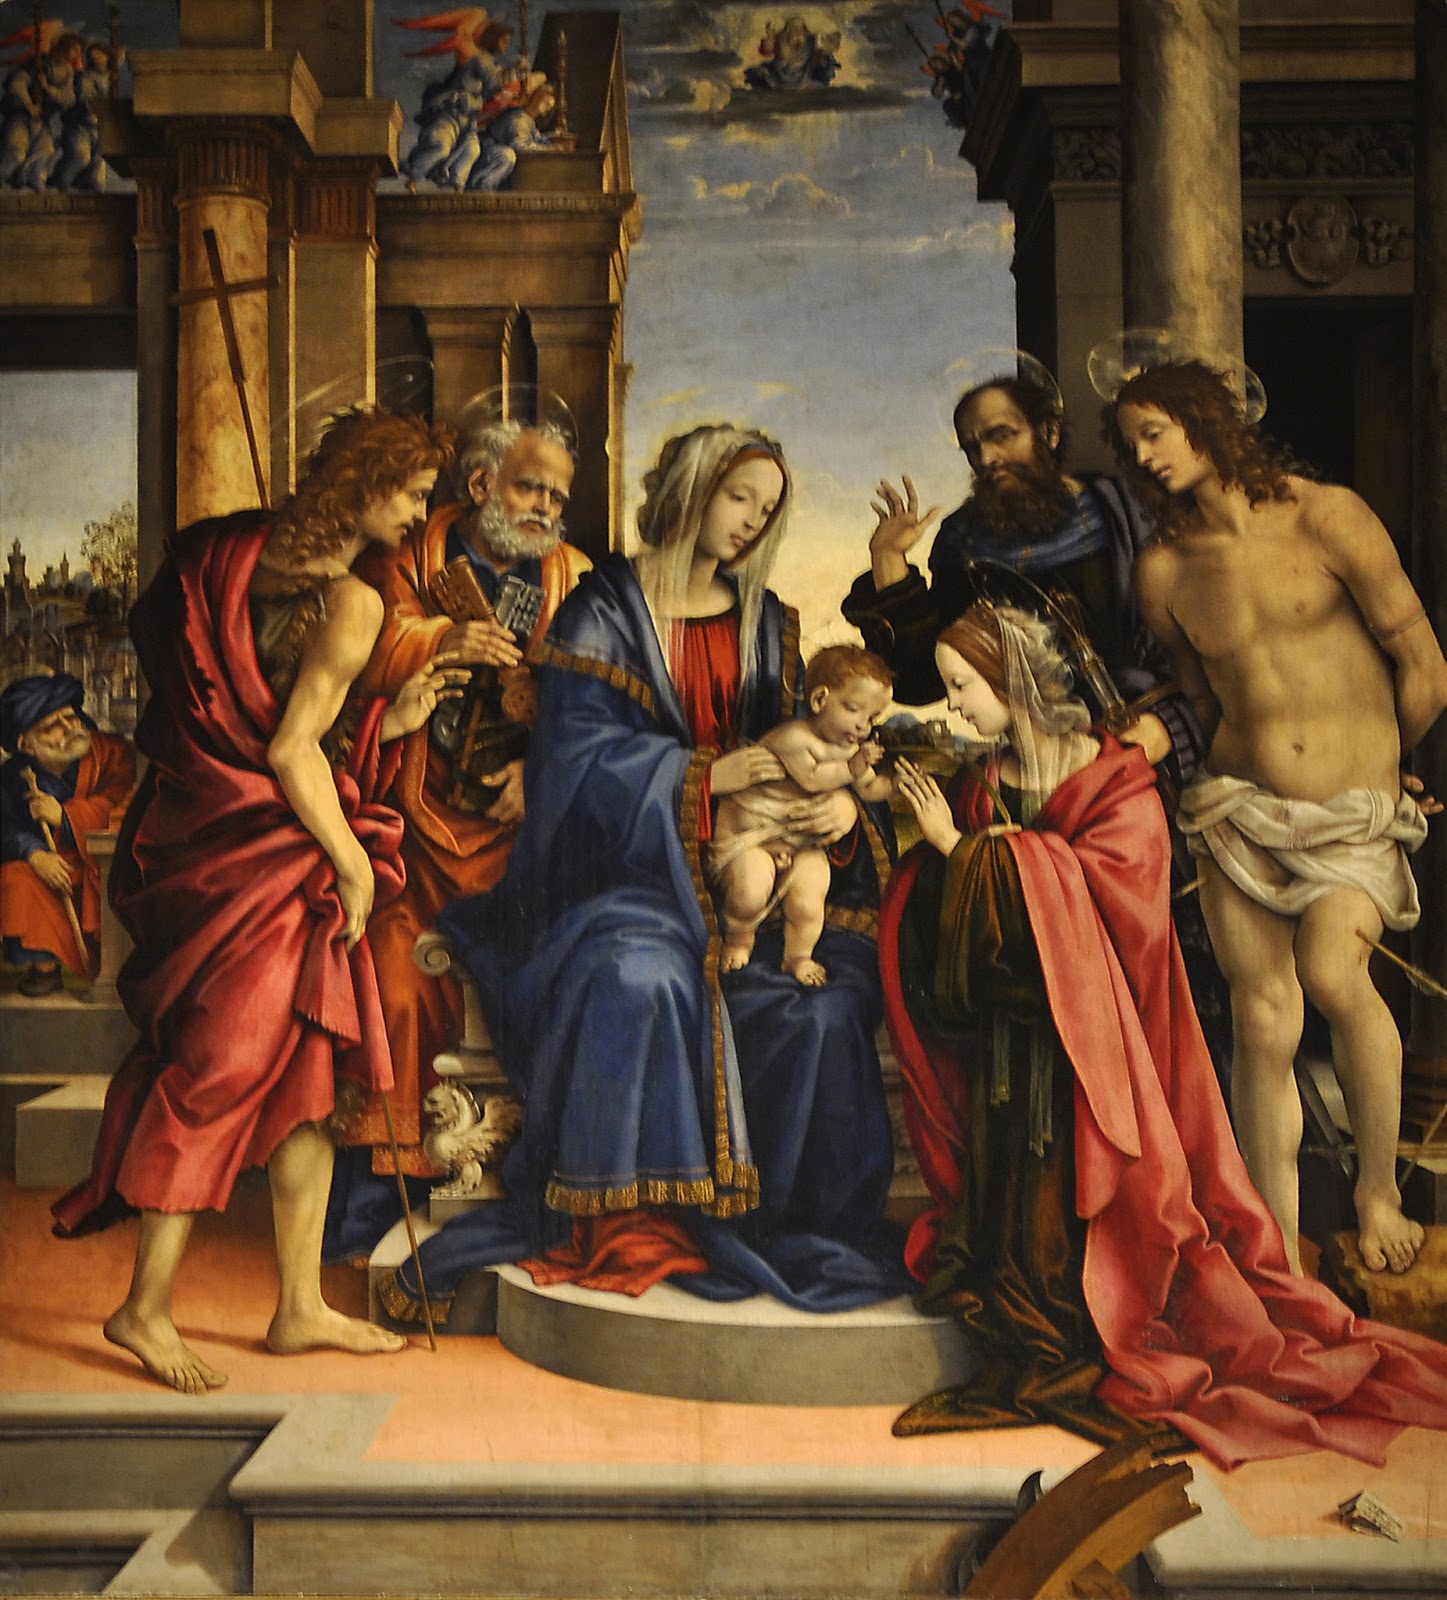 Filippino+Lippi-1457-1504 (47).JPG